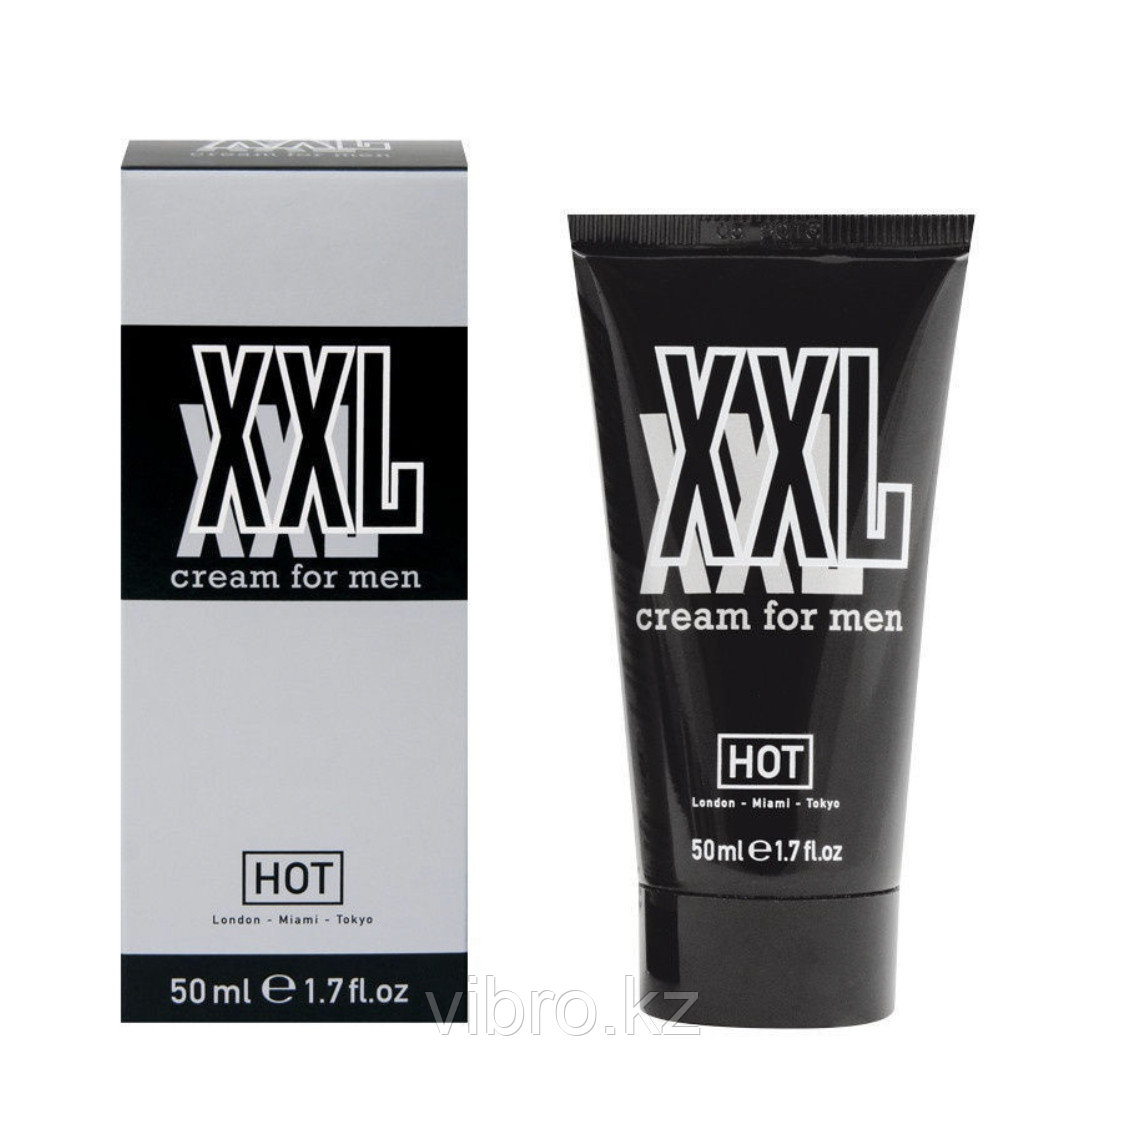 Крем для увеличения члена "XXL cream for men" от Hot. 50мл